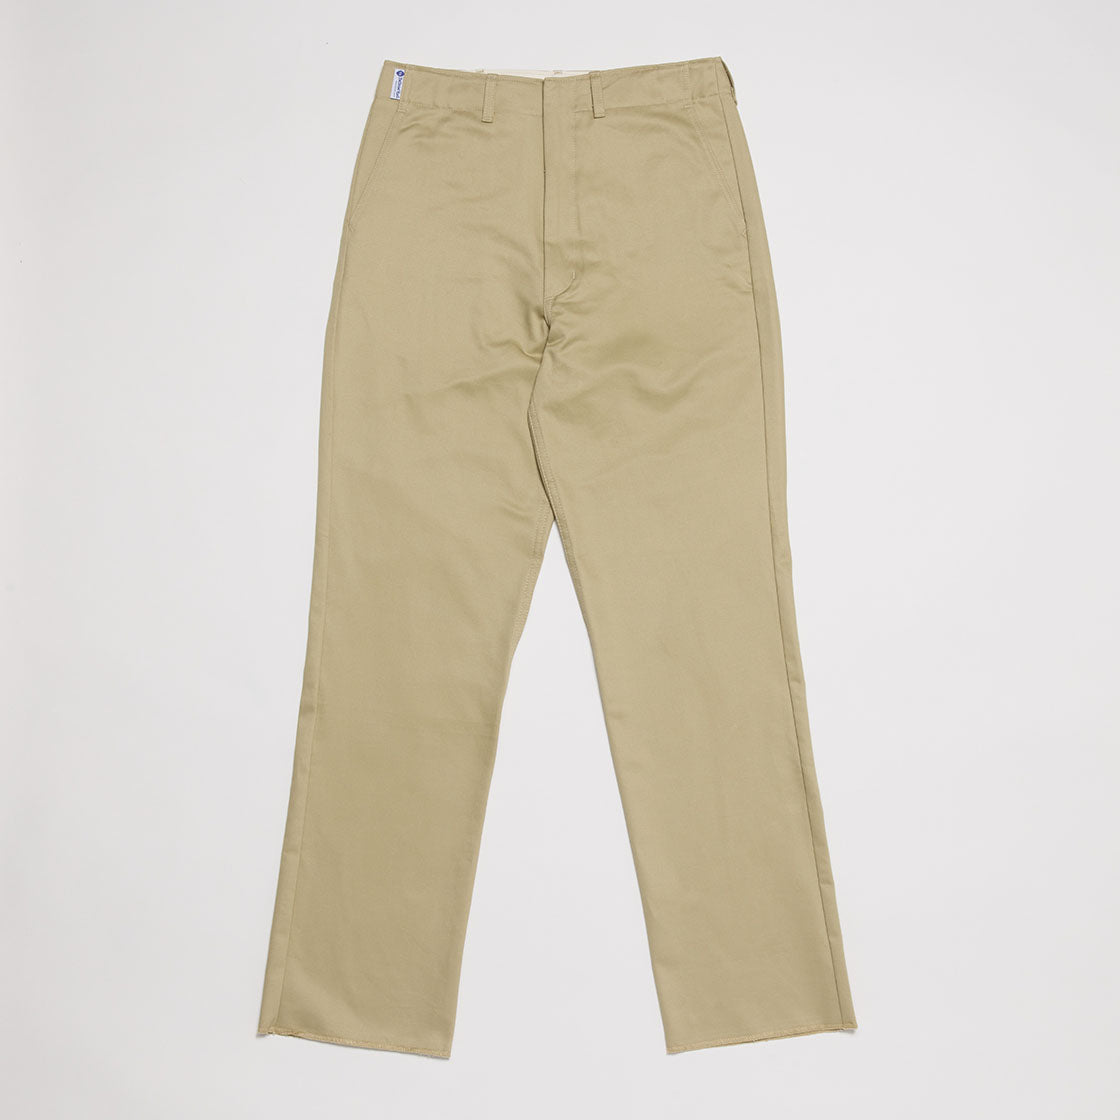 Boy Scout Pants (Khaki)